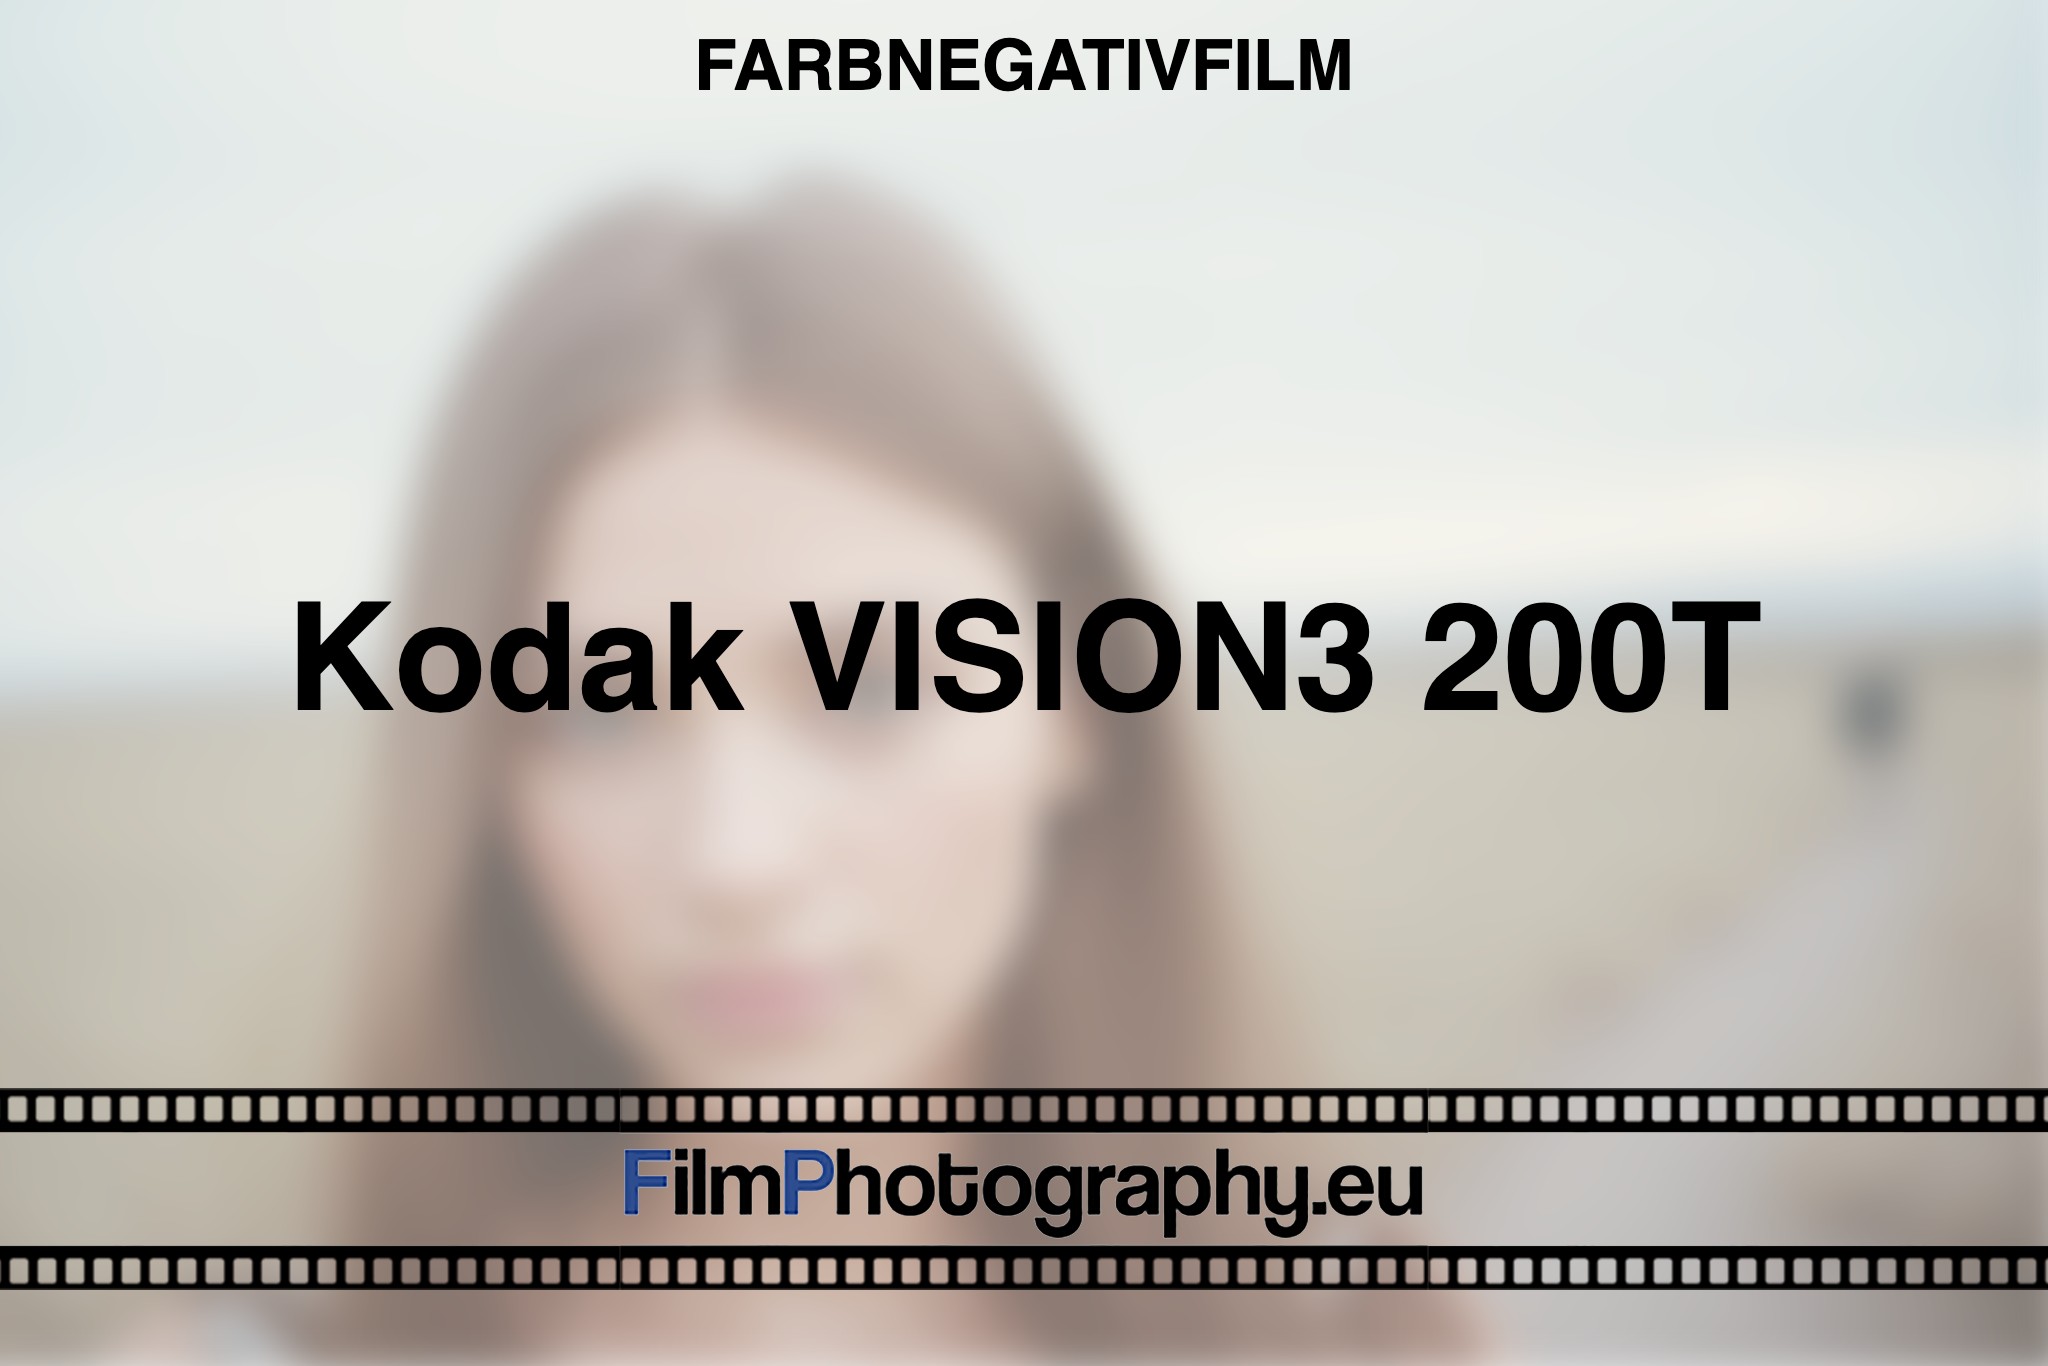 Kodak-Vision3-200T-Farbnegativfilm-bnv